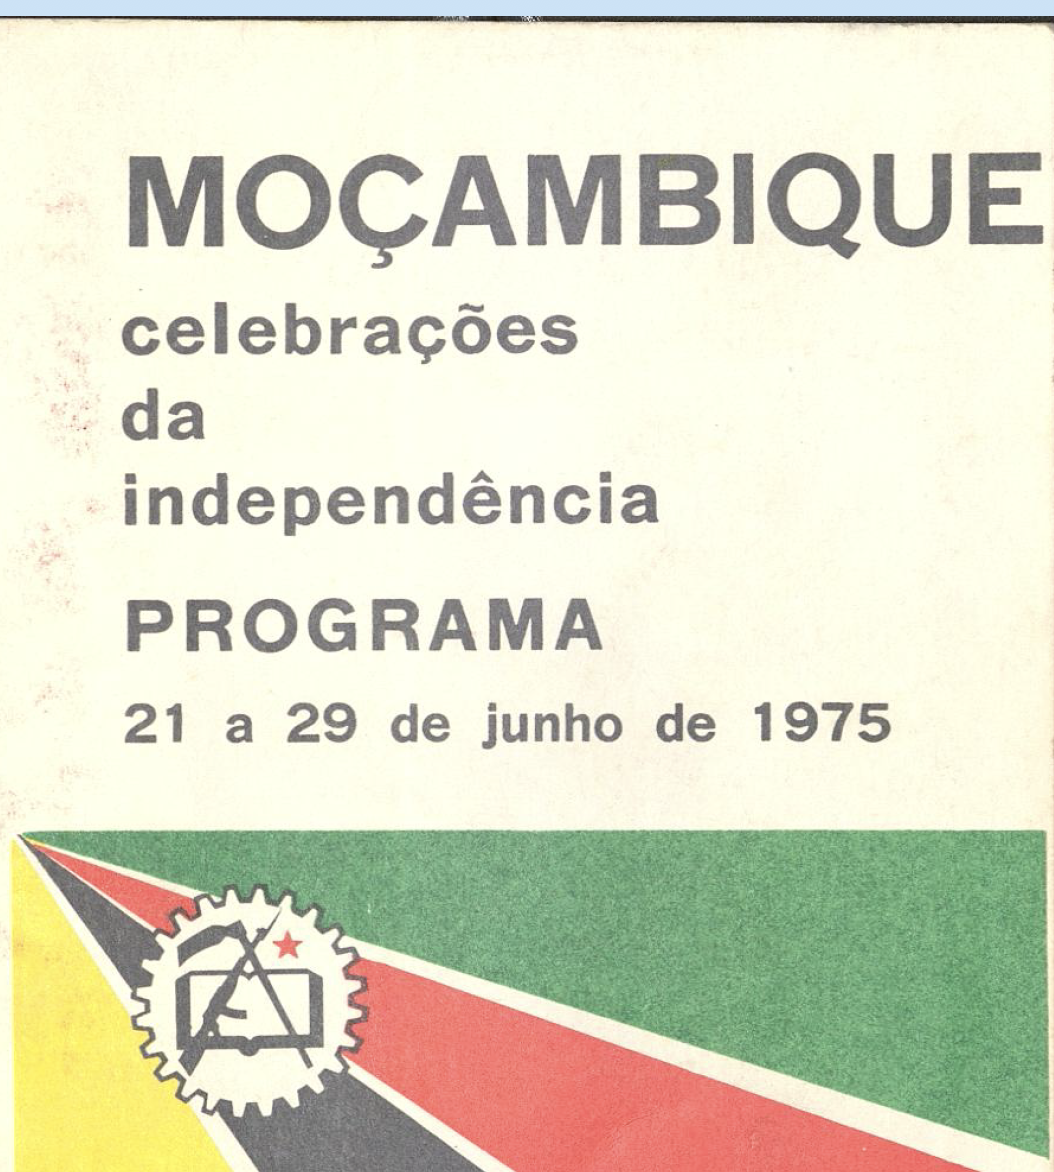 Moçambique Celebrações da indepêndencia 21 a 29 de junho